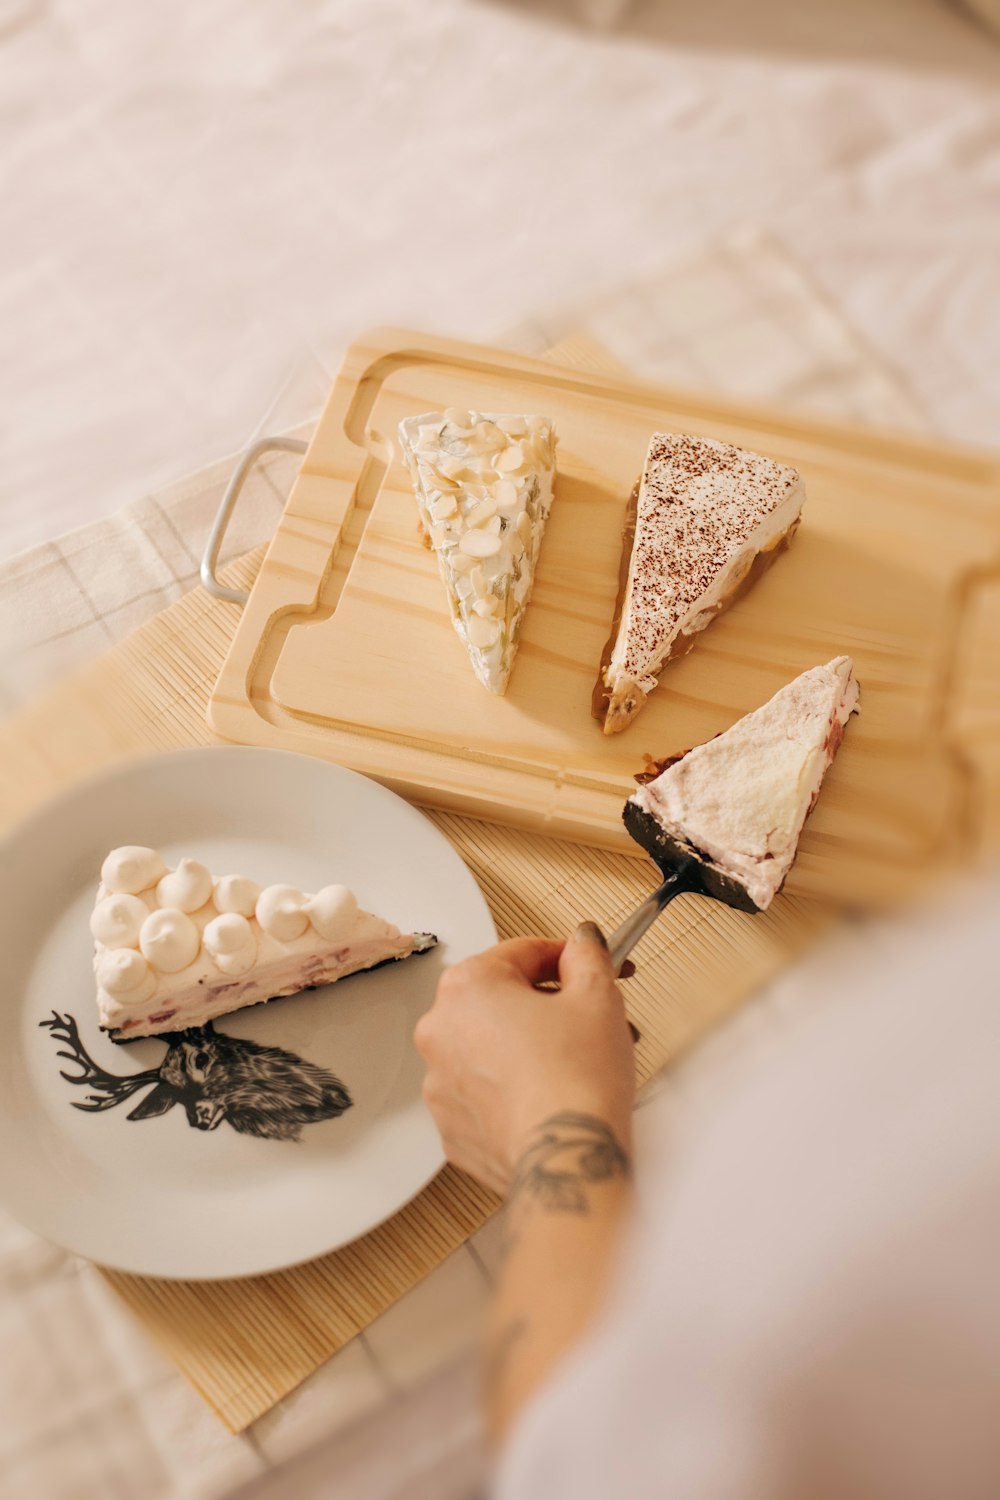 persona cortando queso blanco en bandeja blanca